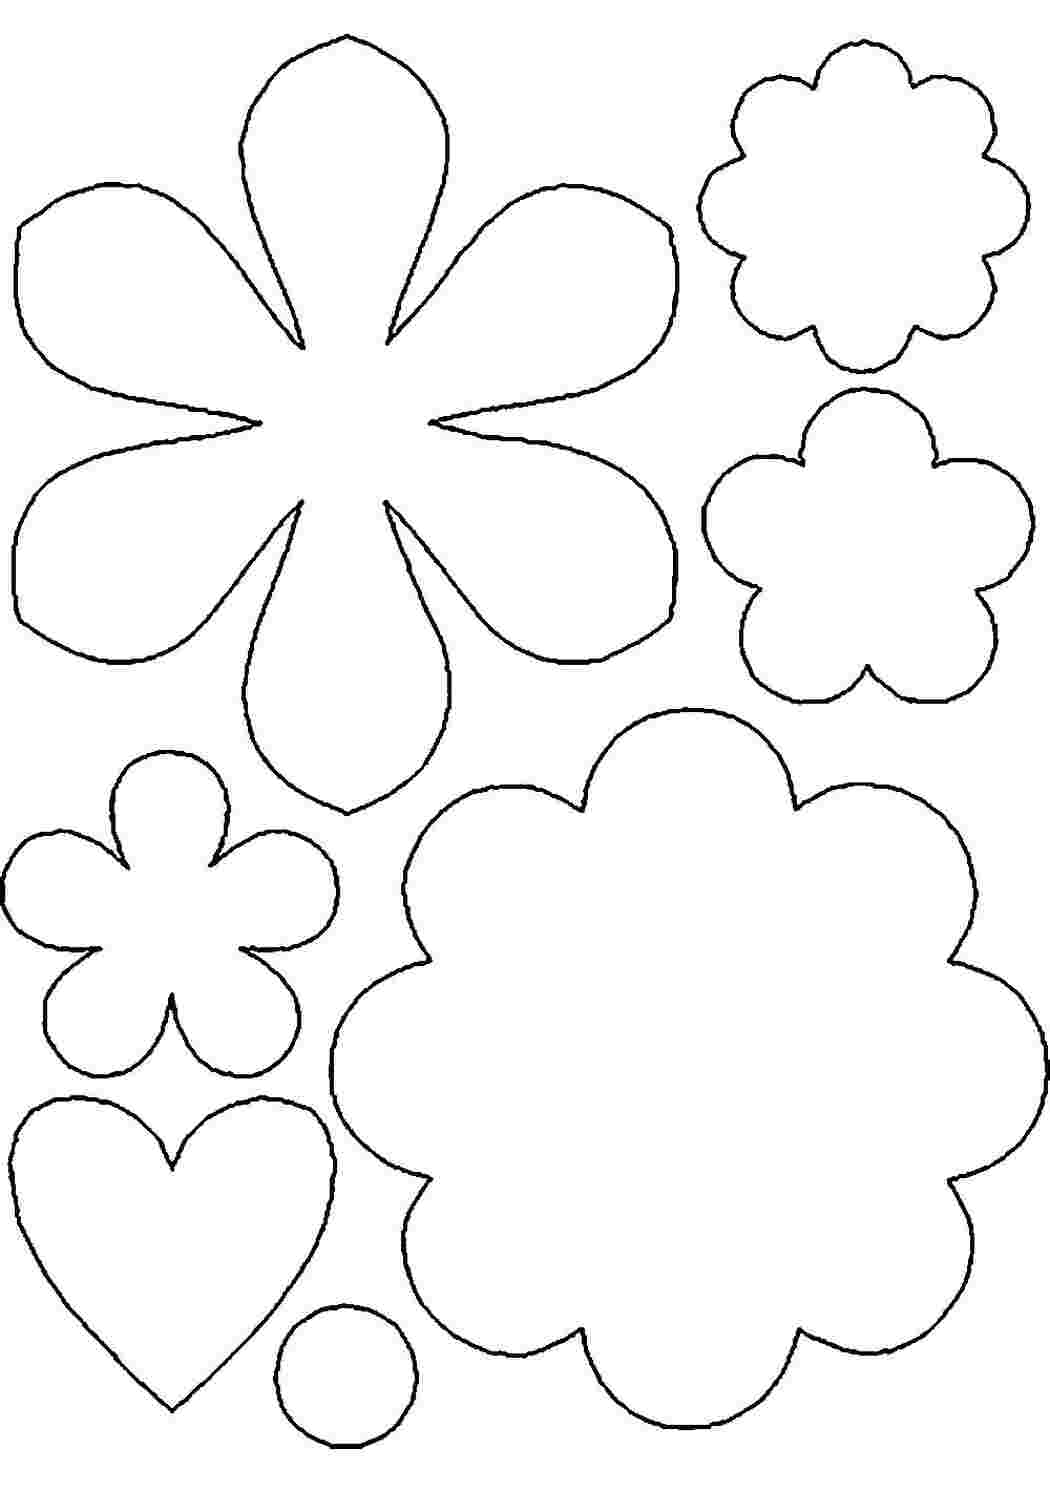 Раскраски Контуры цветов для вырезания скрапбукинга поделок и аппликаций скачать бесплатно онлайн Шаблоны цветов для создания аппликаций и поделок в детском саду распечатать на сайте